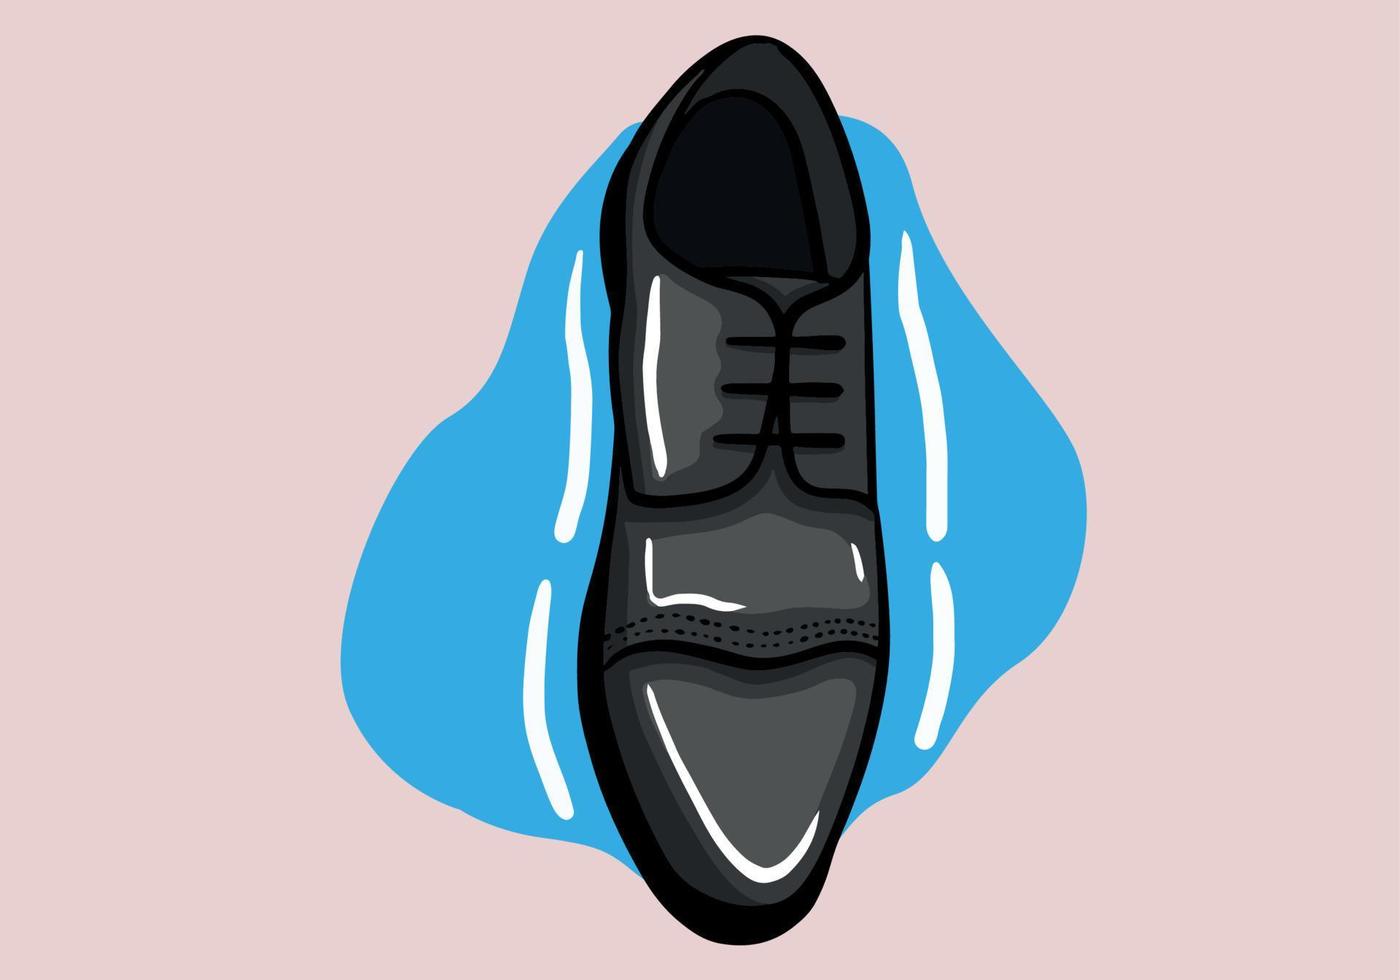 zwart Mannen glanzend octrooi leer schoen. vector hand- getrokken illustratie van een geïsoleerd achtergrond.